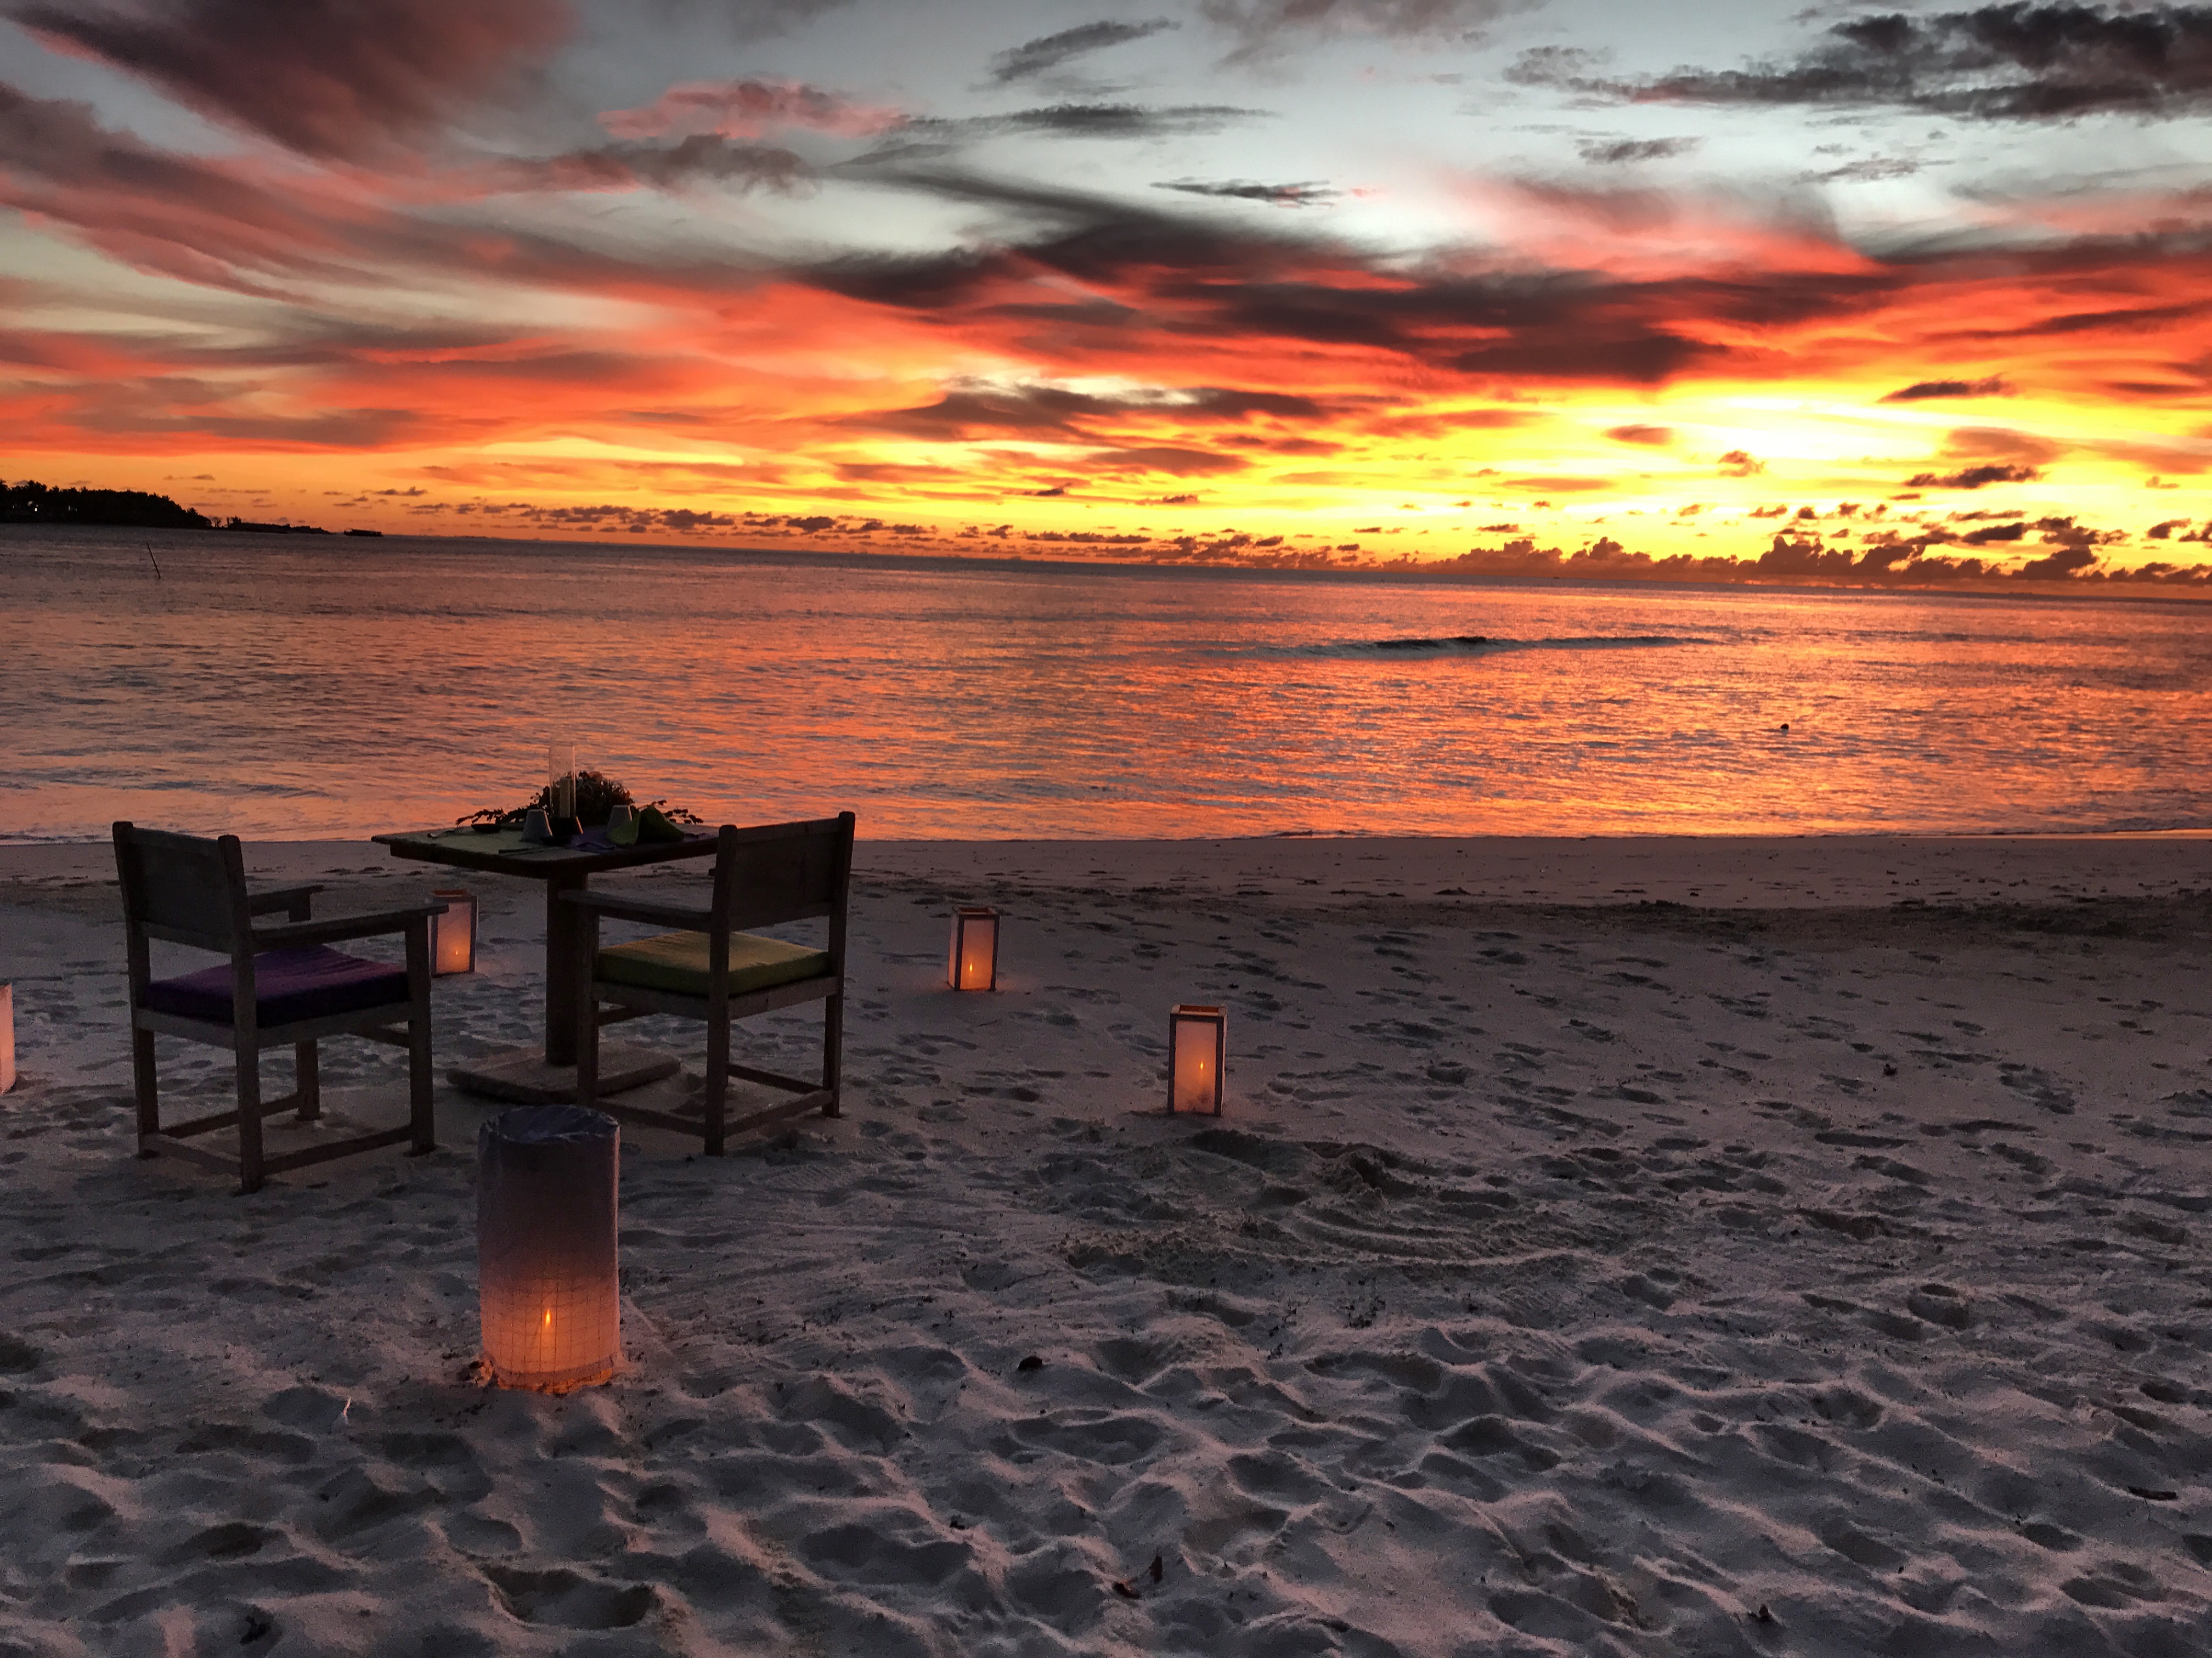 Maldives Islands: Soneva Fushi Hotel sunset beach